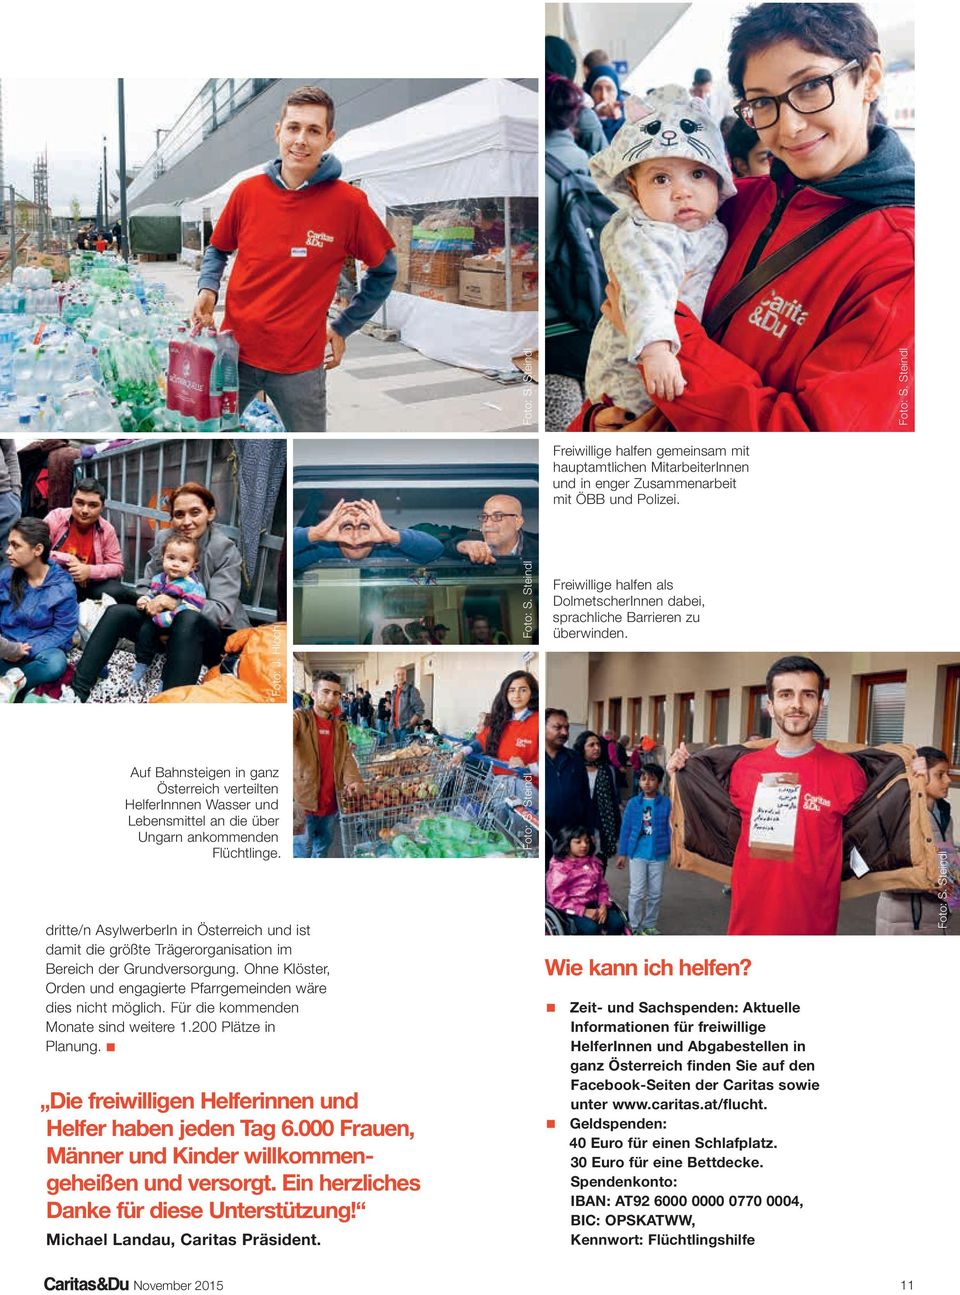 Auf Bahnsteigen in ganz Österreich verteilten HelferInnnen Wasser und Lebensmittel an die über Ungarn ankommenden Flüchtlinge.